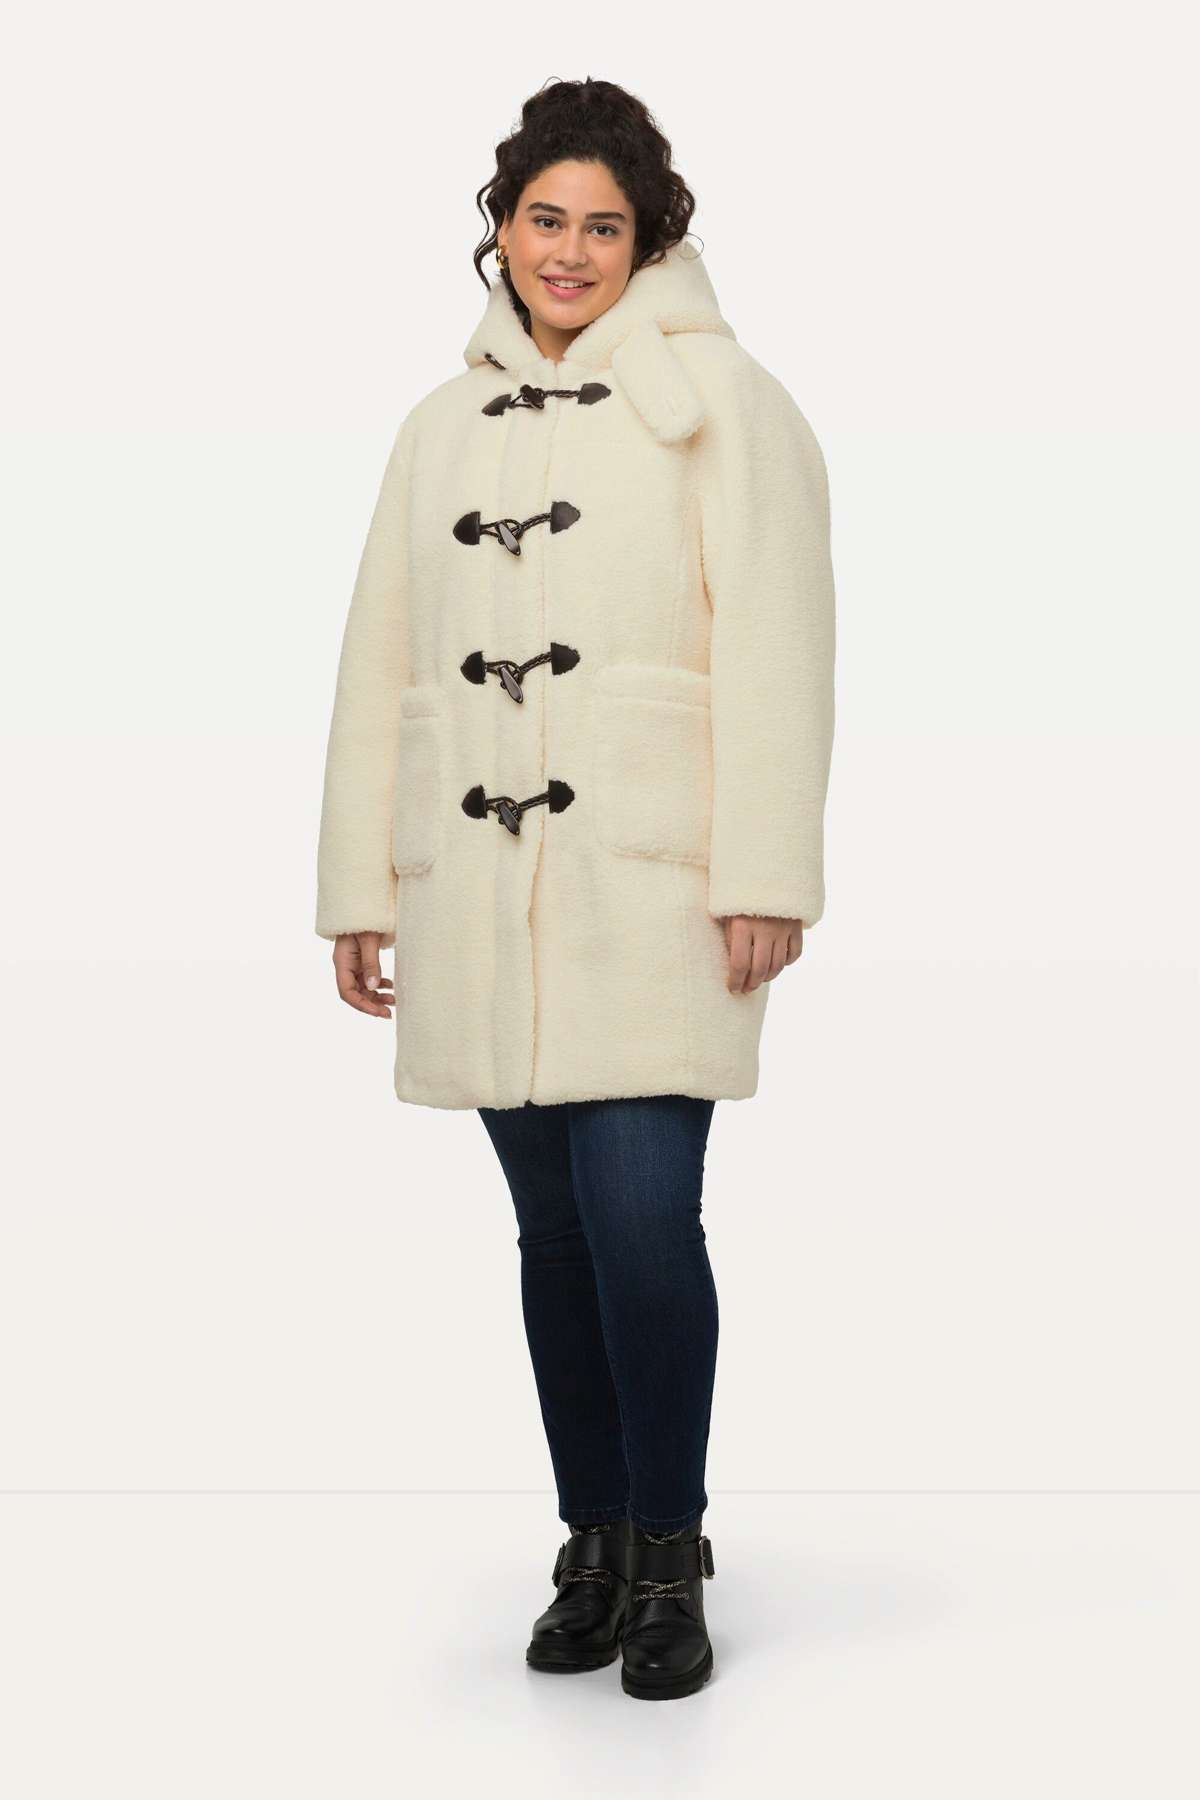 Зимнее пальто, плюшевый дафлкот с капюшоном и пуговицами, приятное мягкое